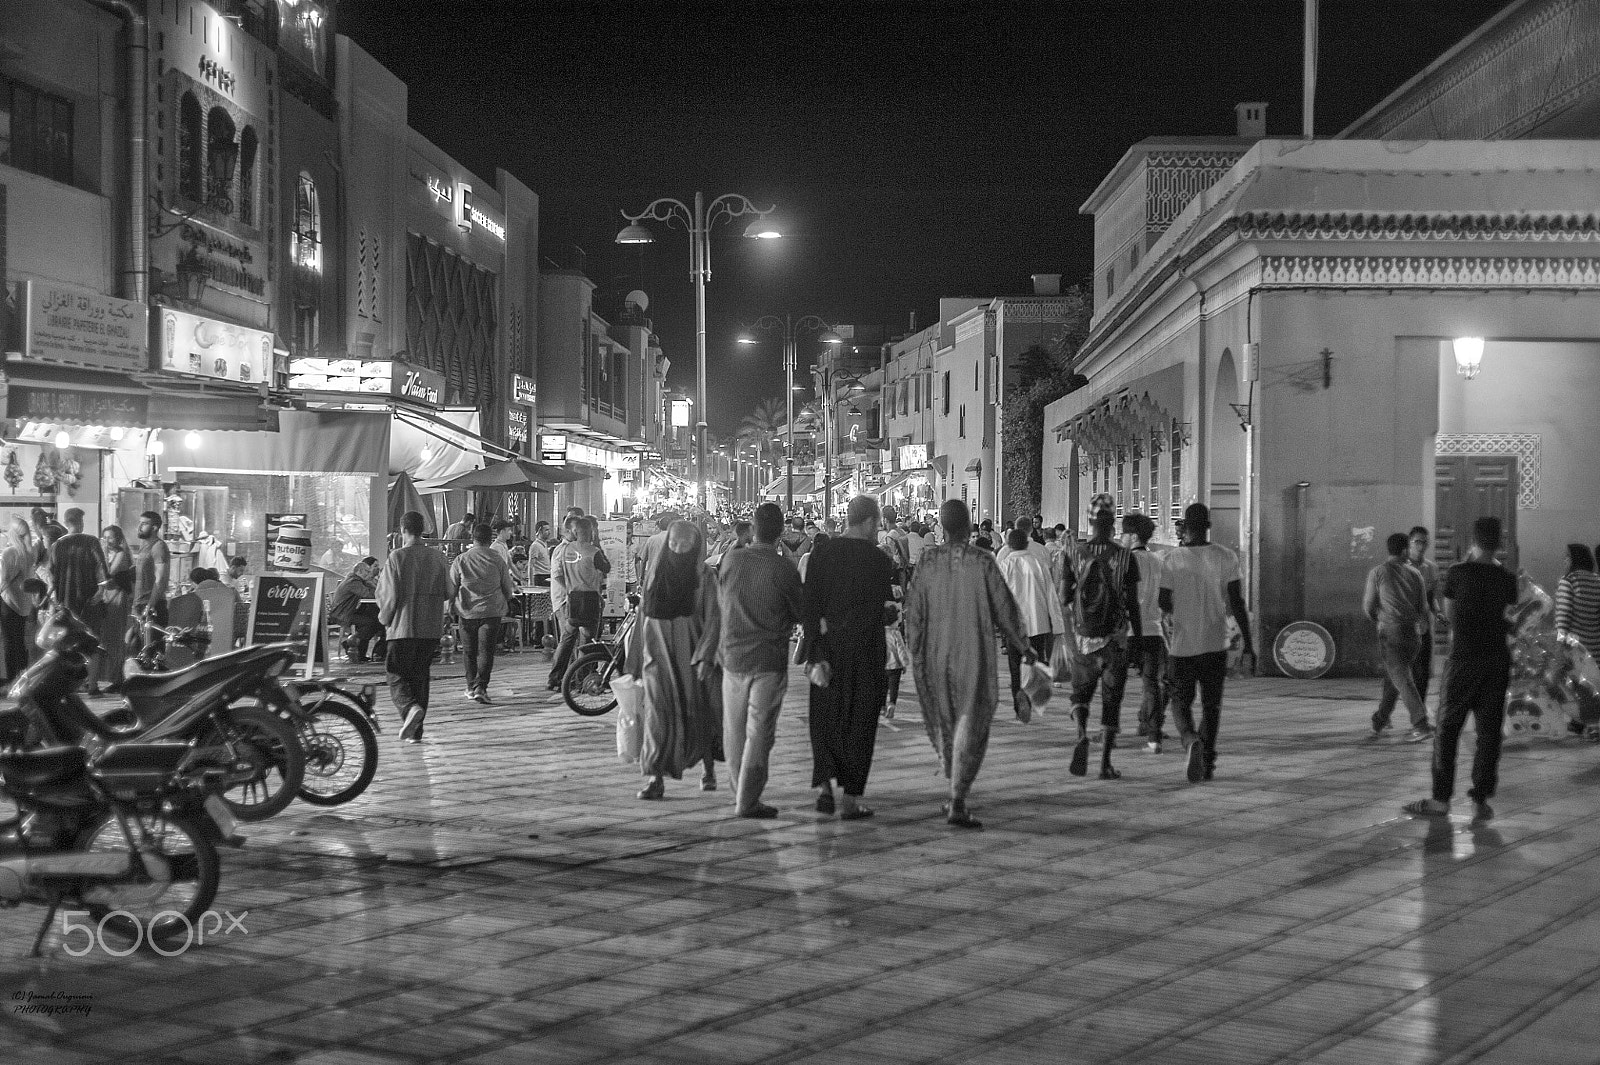 Nikon D700 + AF Nikkor 50mm f/1.8 sample photo. Marrakech street photography